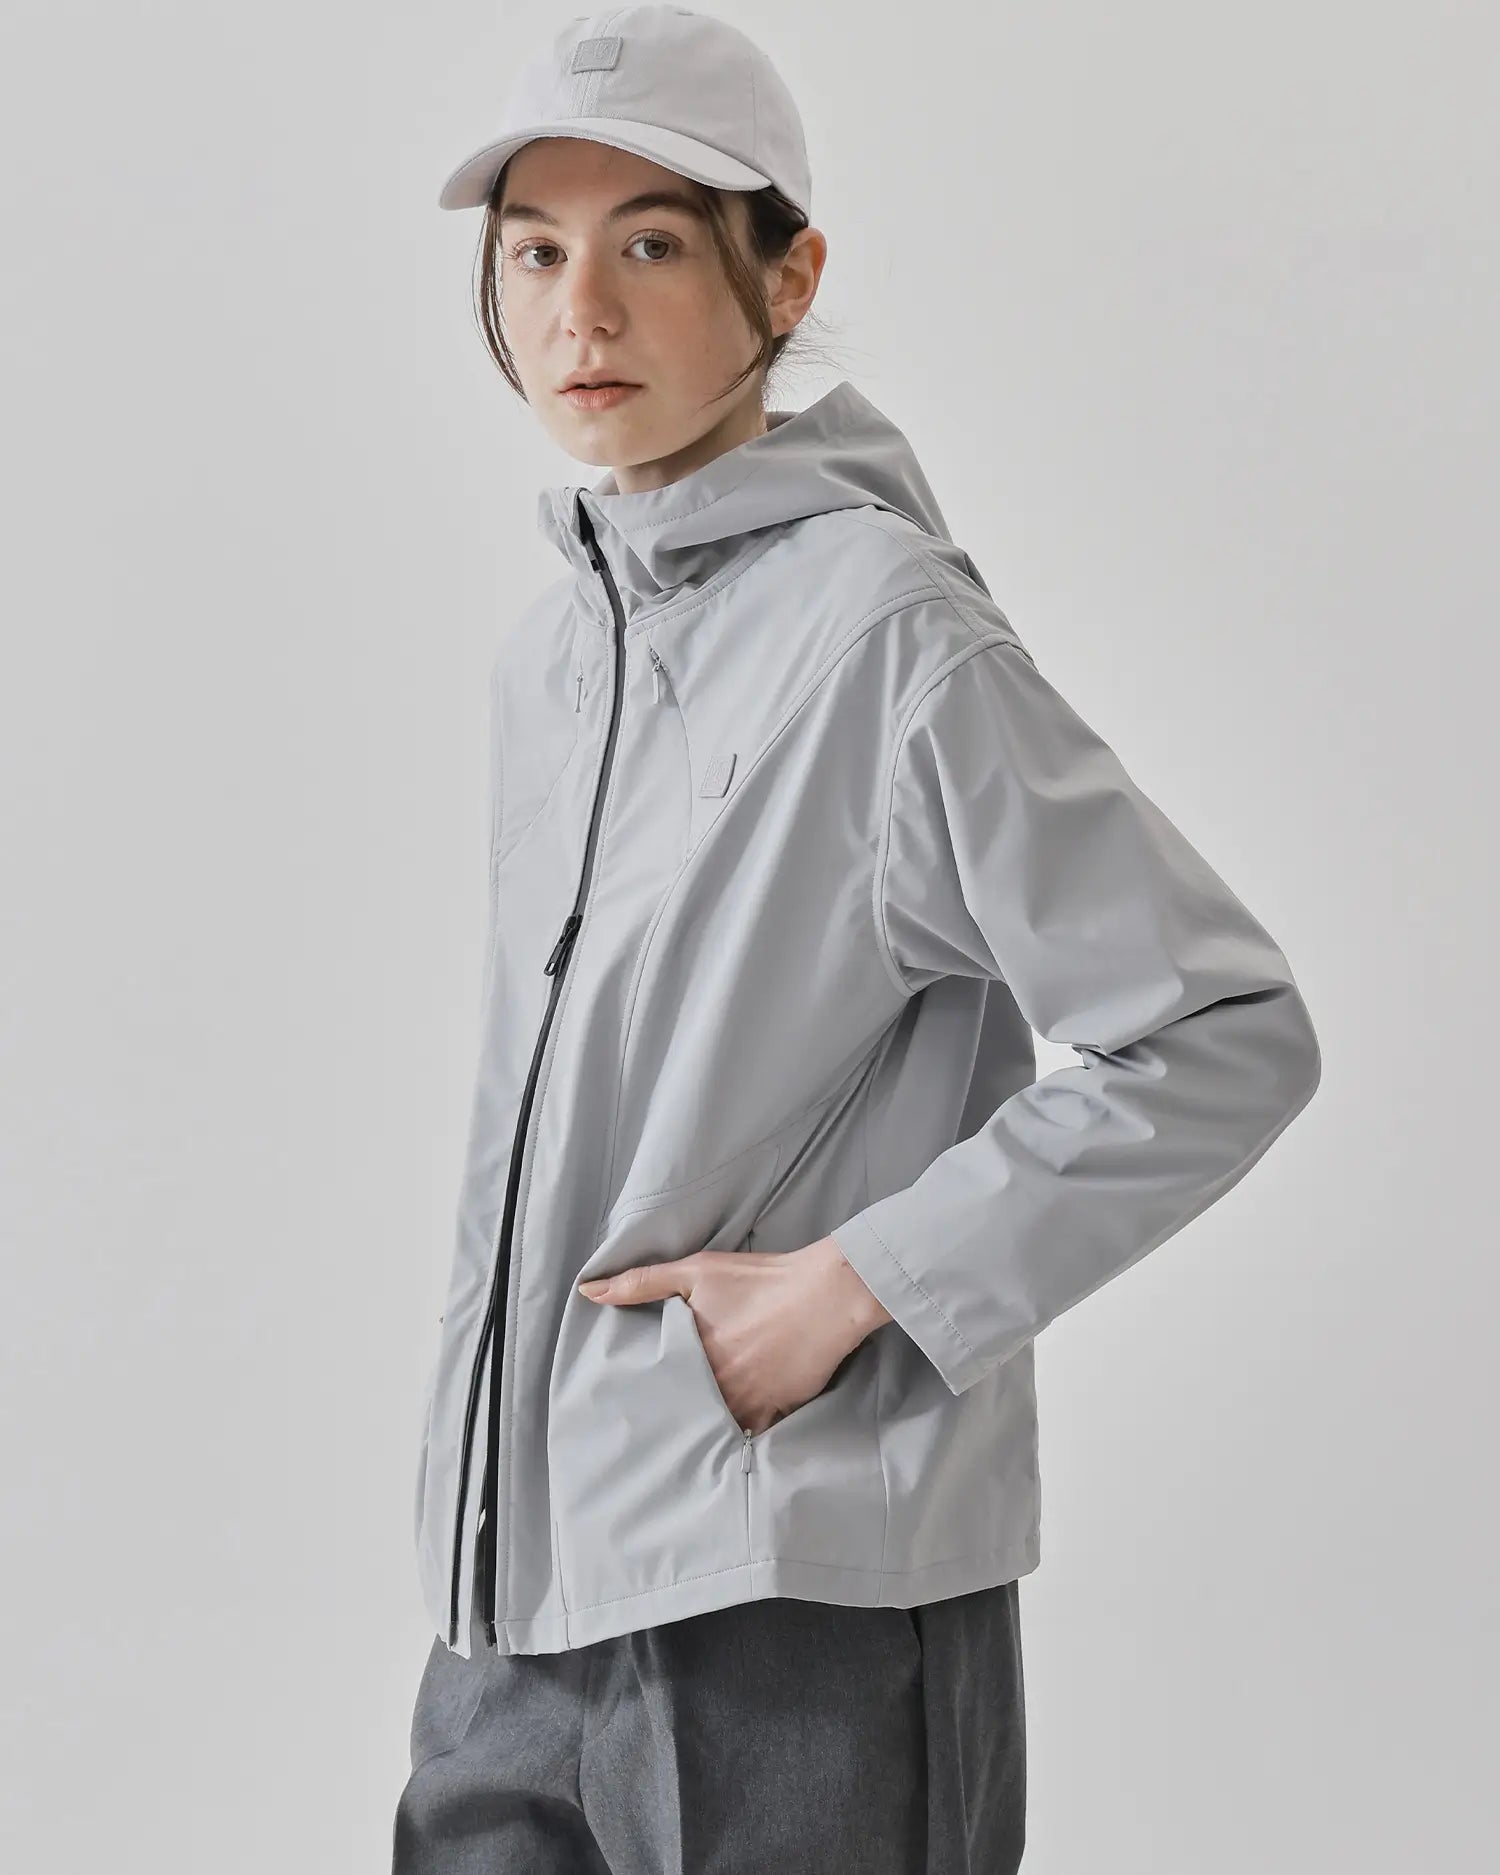 Women's Sports Jacket in Gray 06 #gray